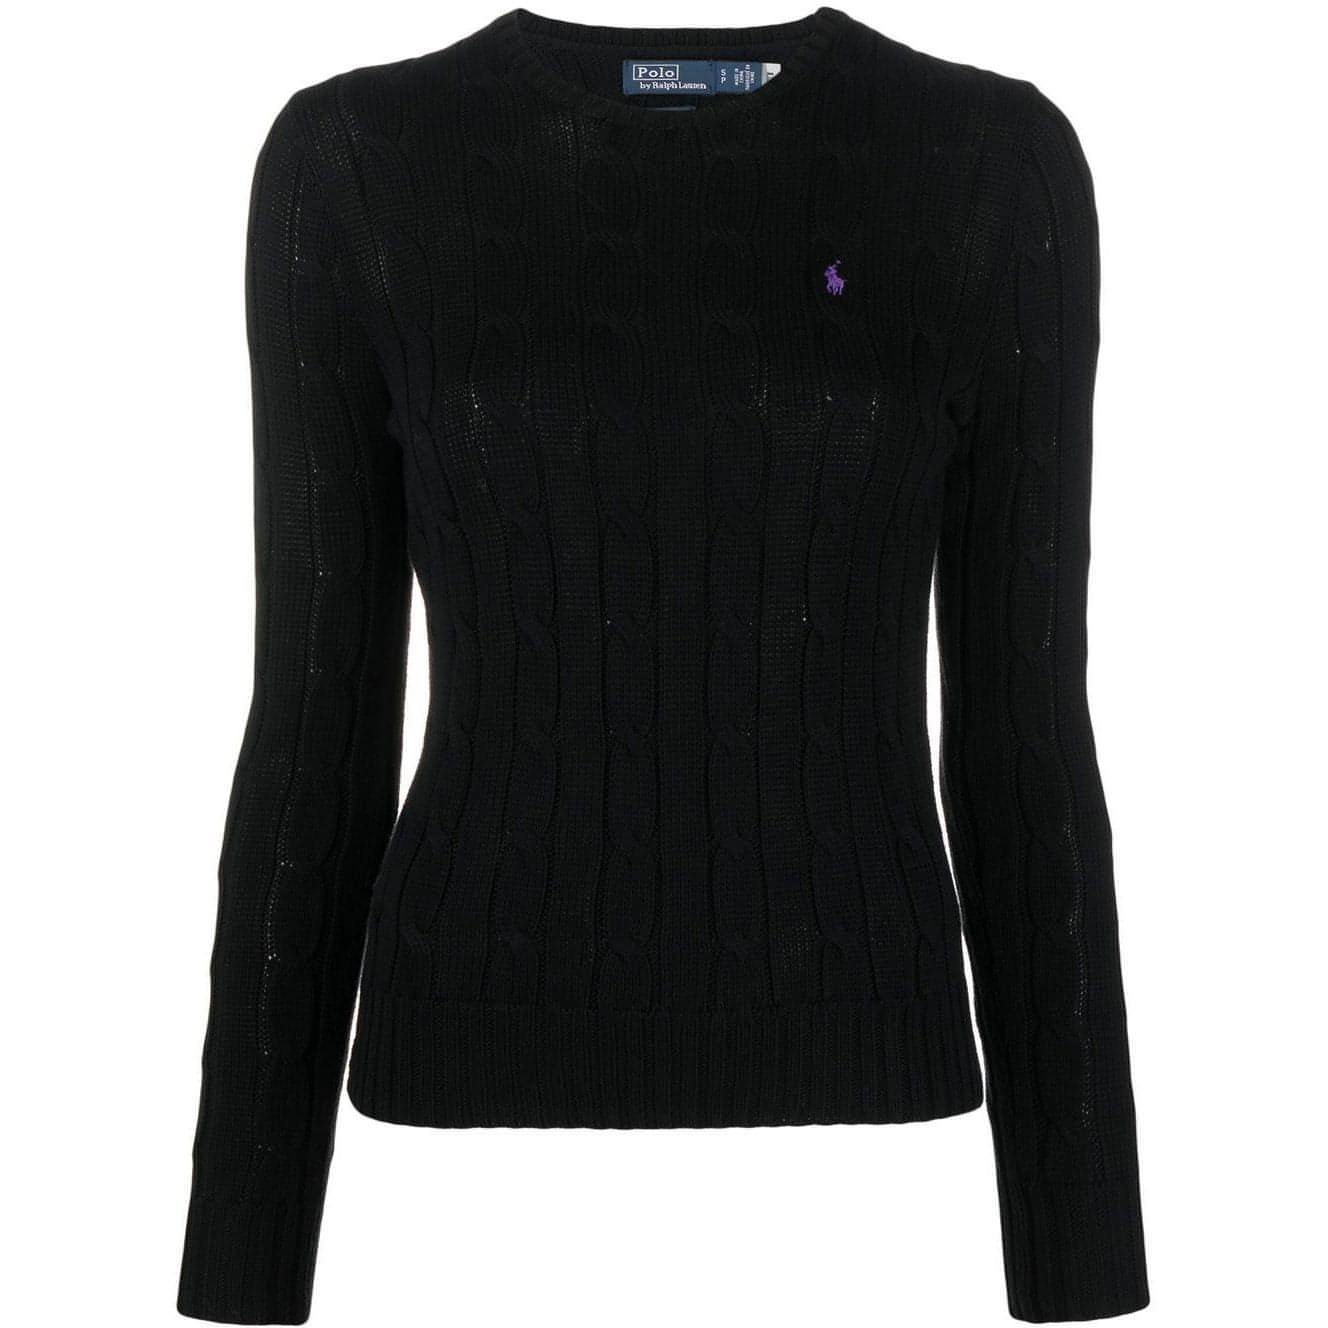 POLO RALPH LAUREN moteriškas juodas megztinis Julianna pullover